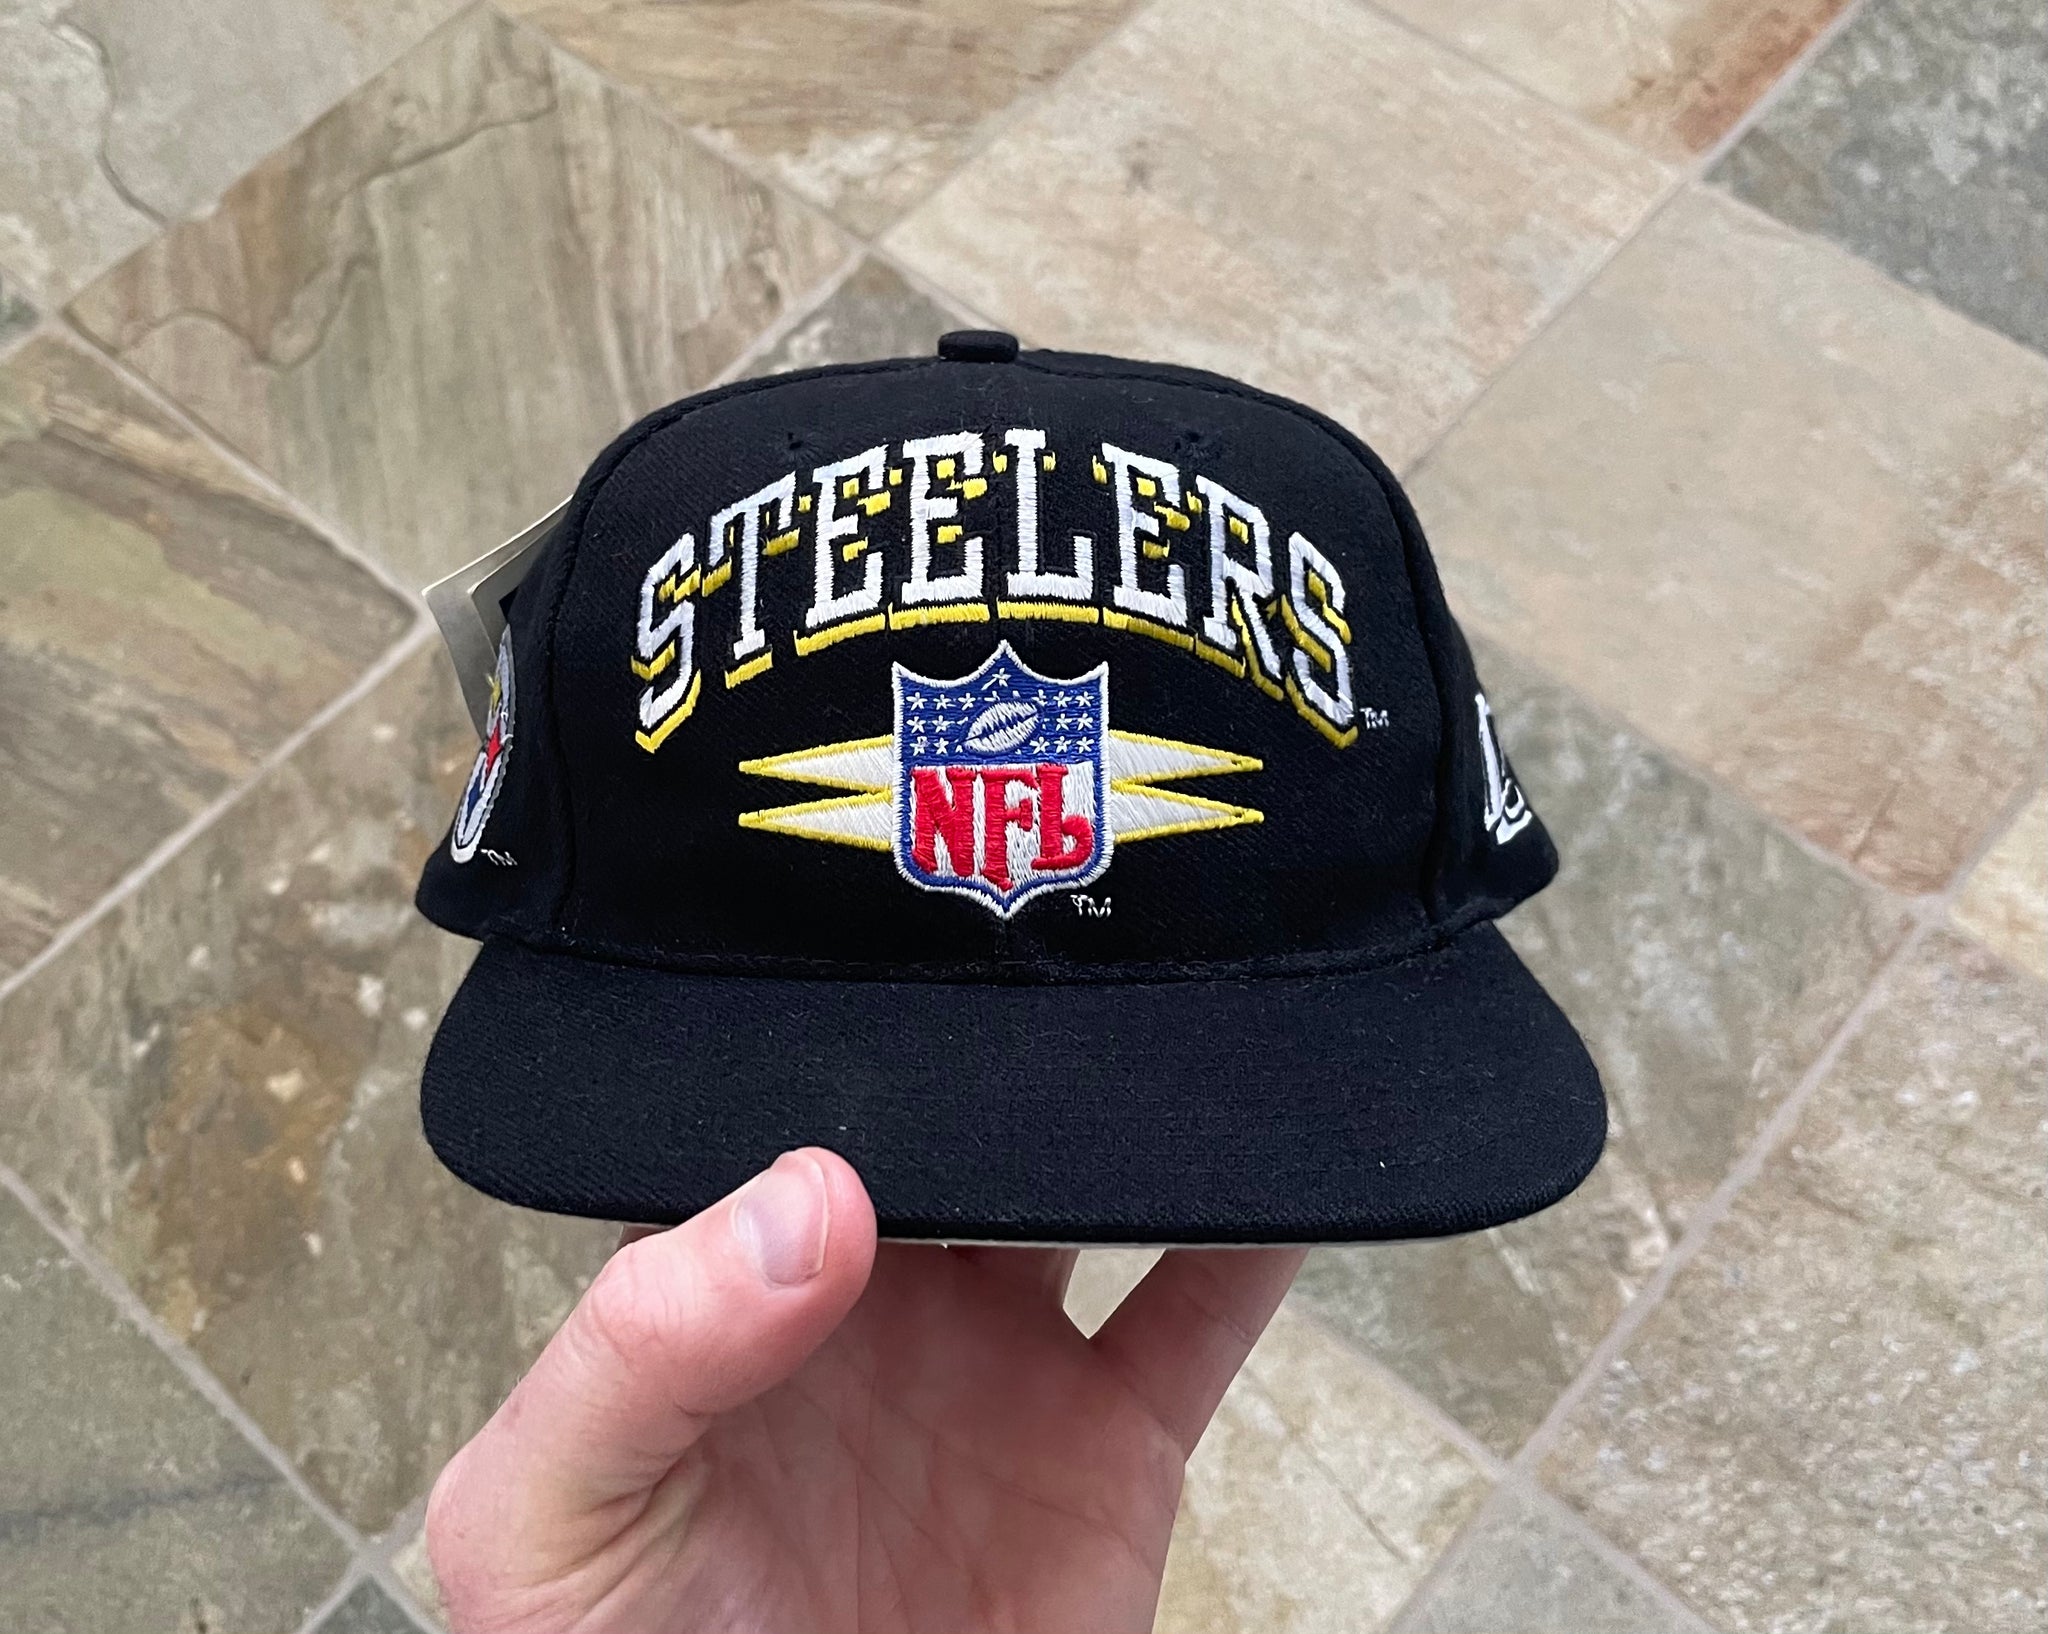 Vintage 90s Pittsburgh Steelers Snapback Hat Deadstock 